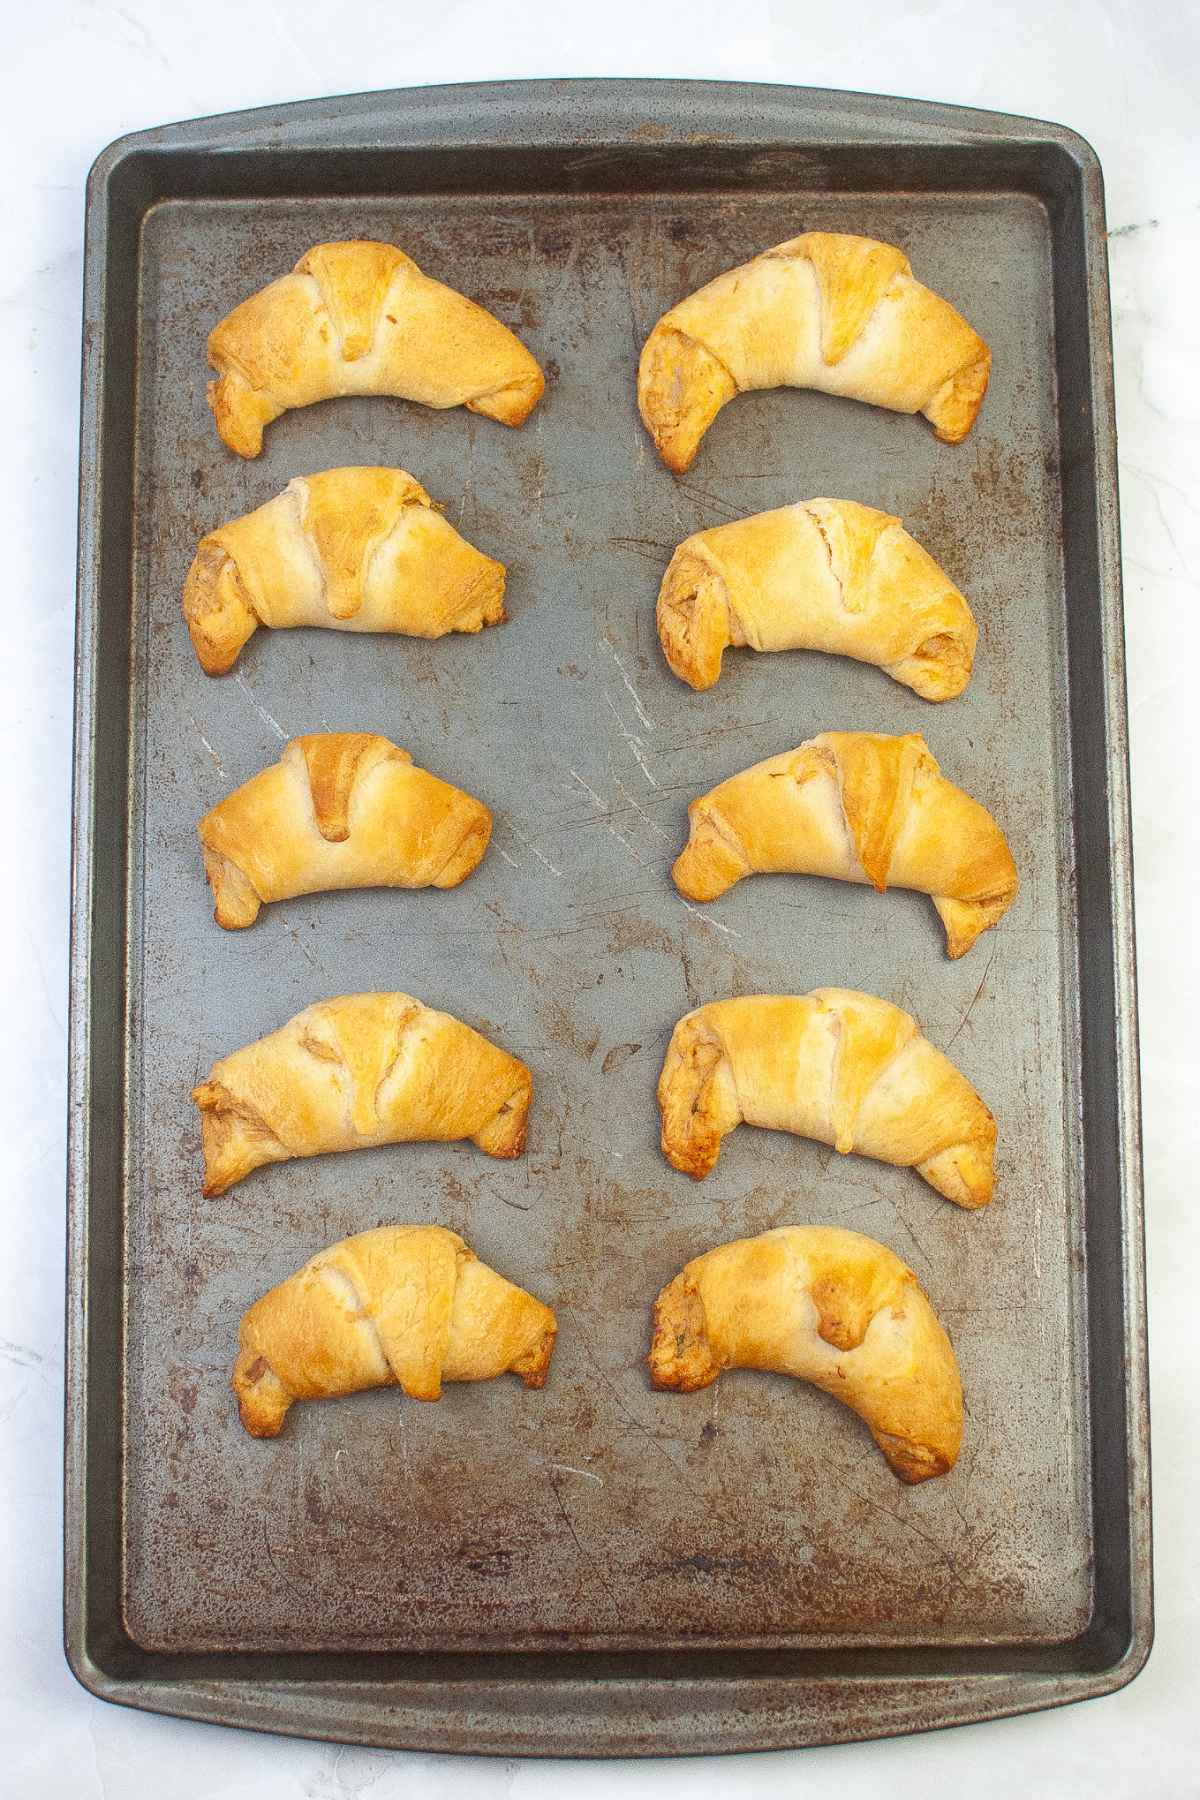 Golden brown crescent rolls on baking sheet